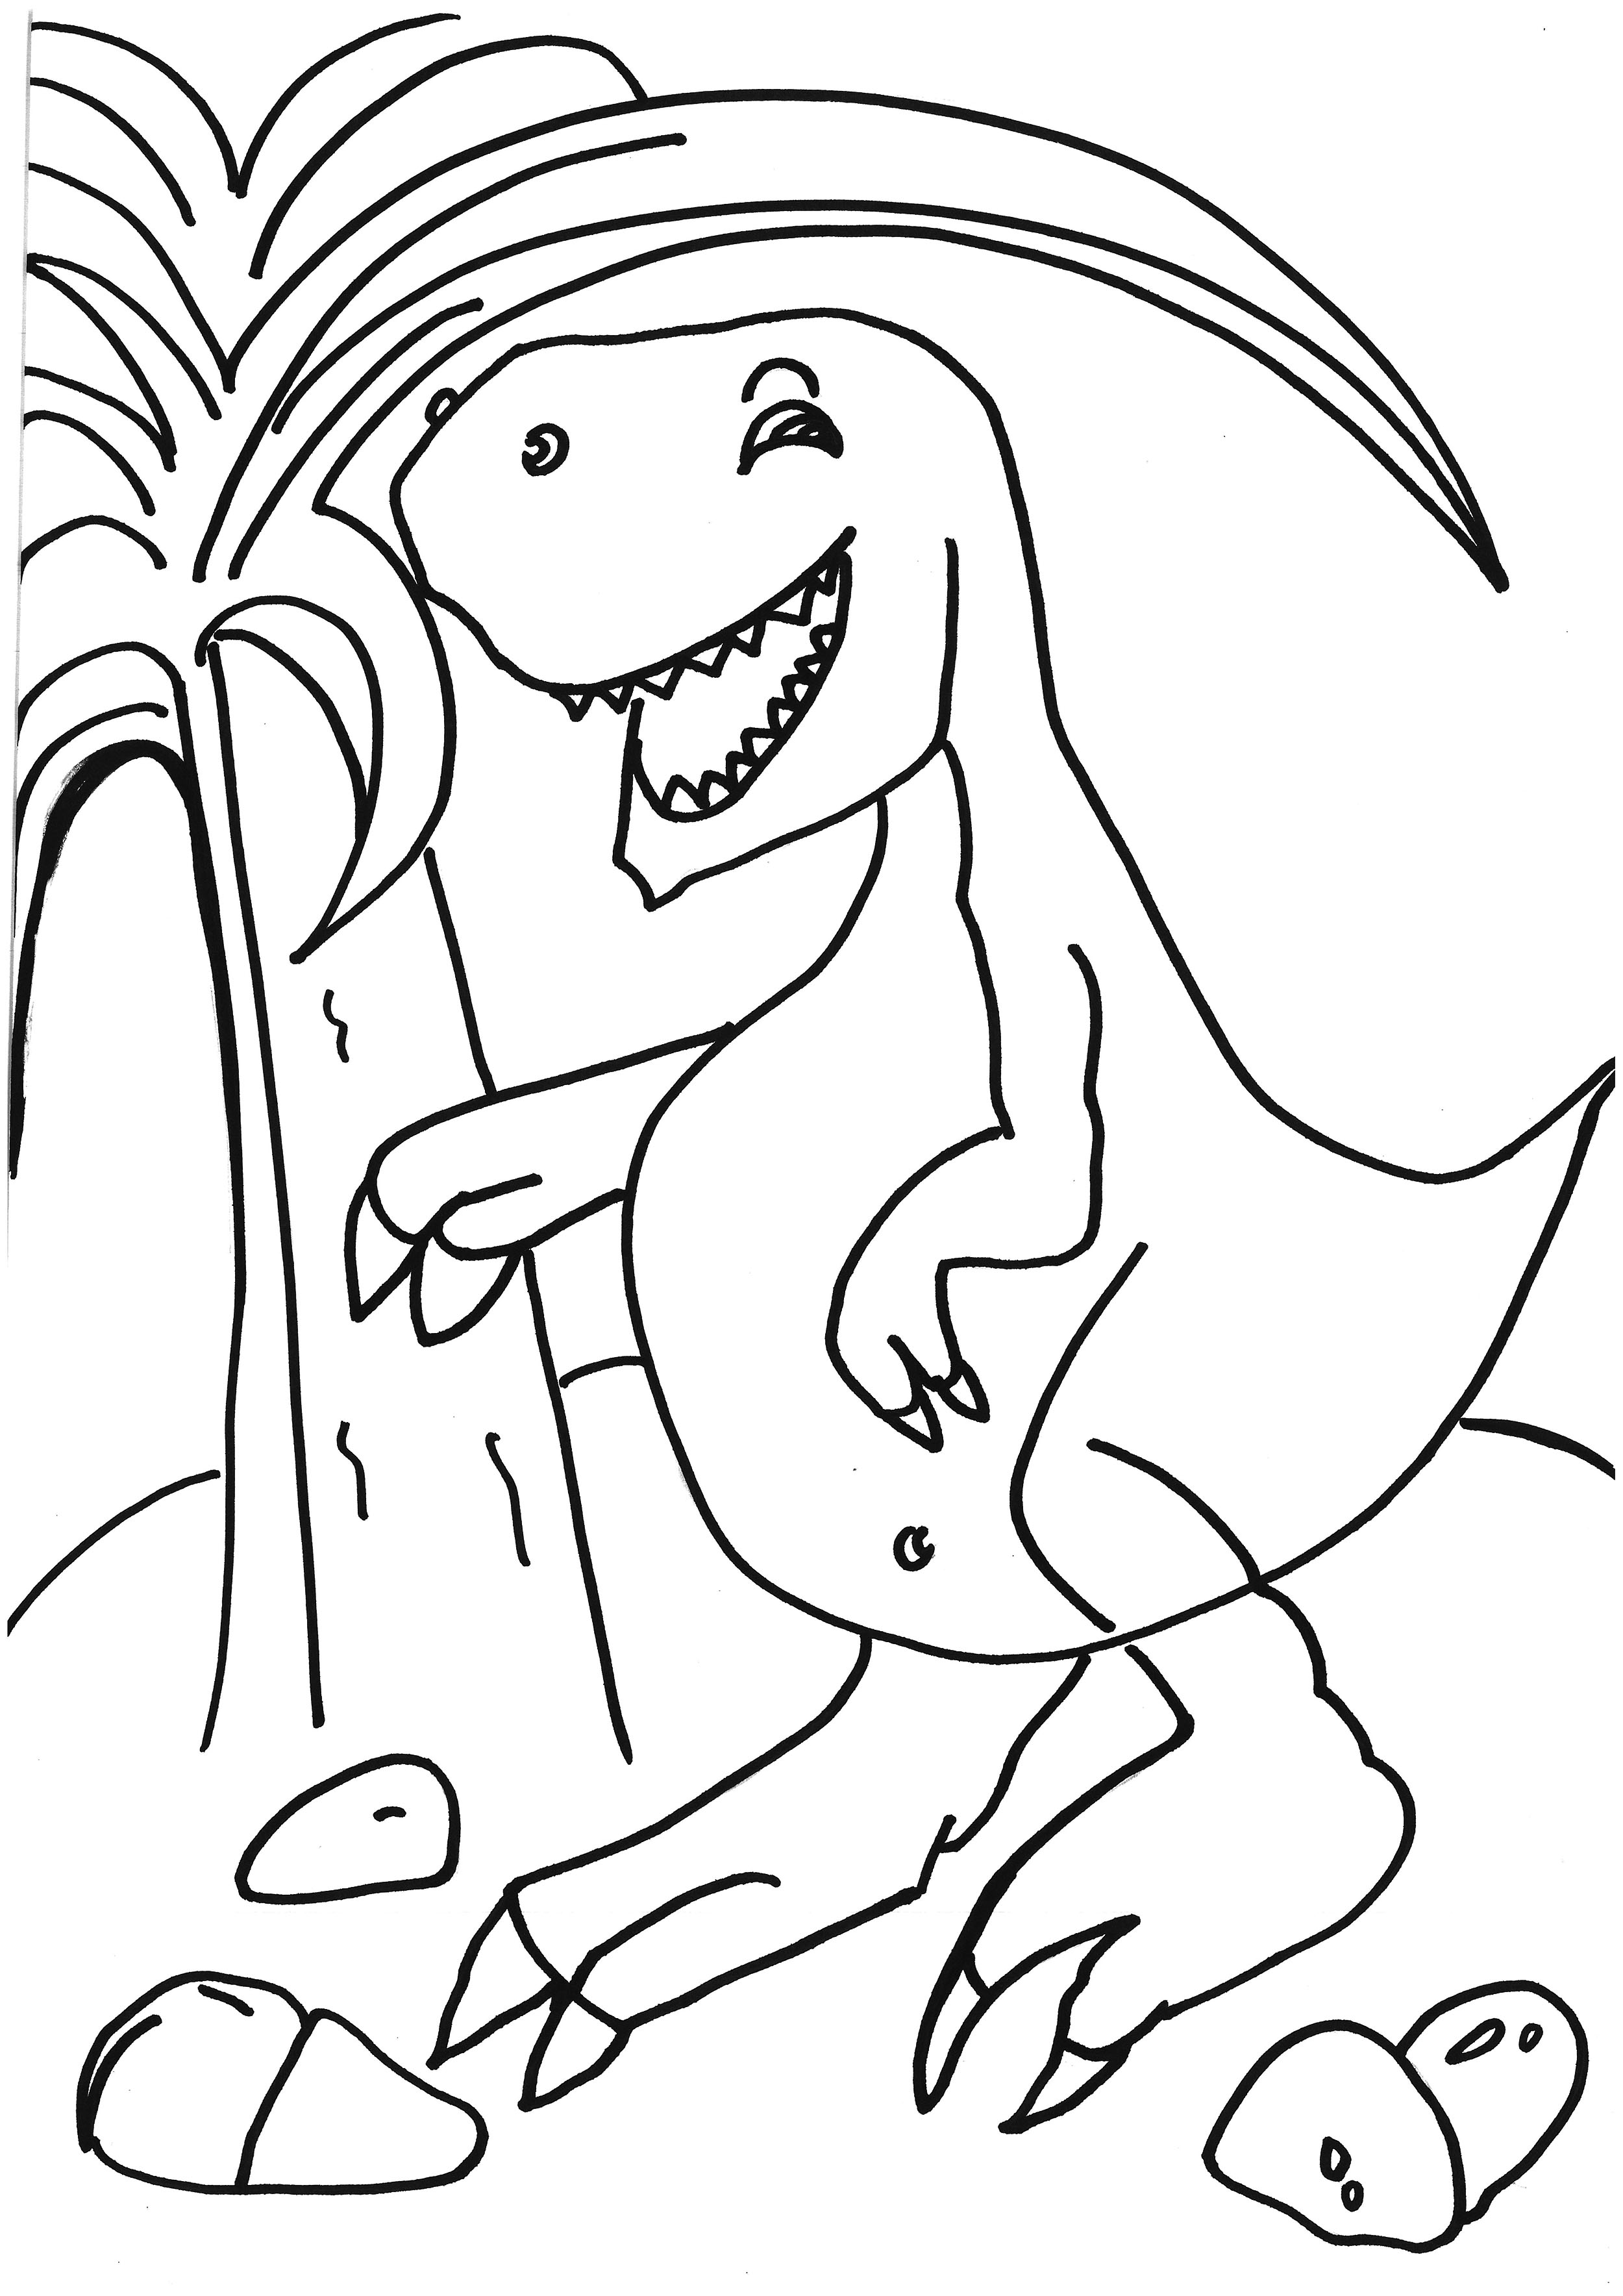 托班可打印简笔画填色画教案 恐龙的故事画画作品